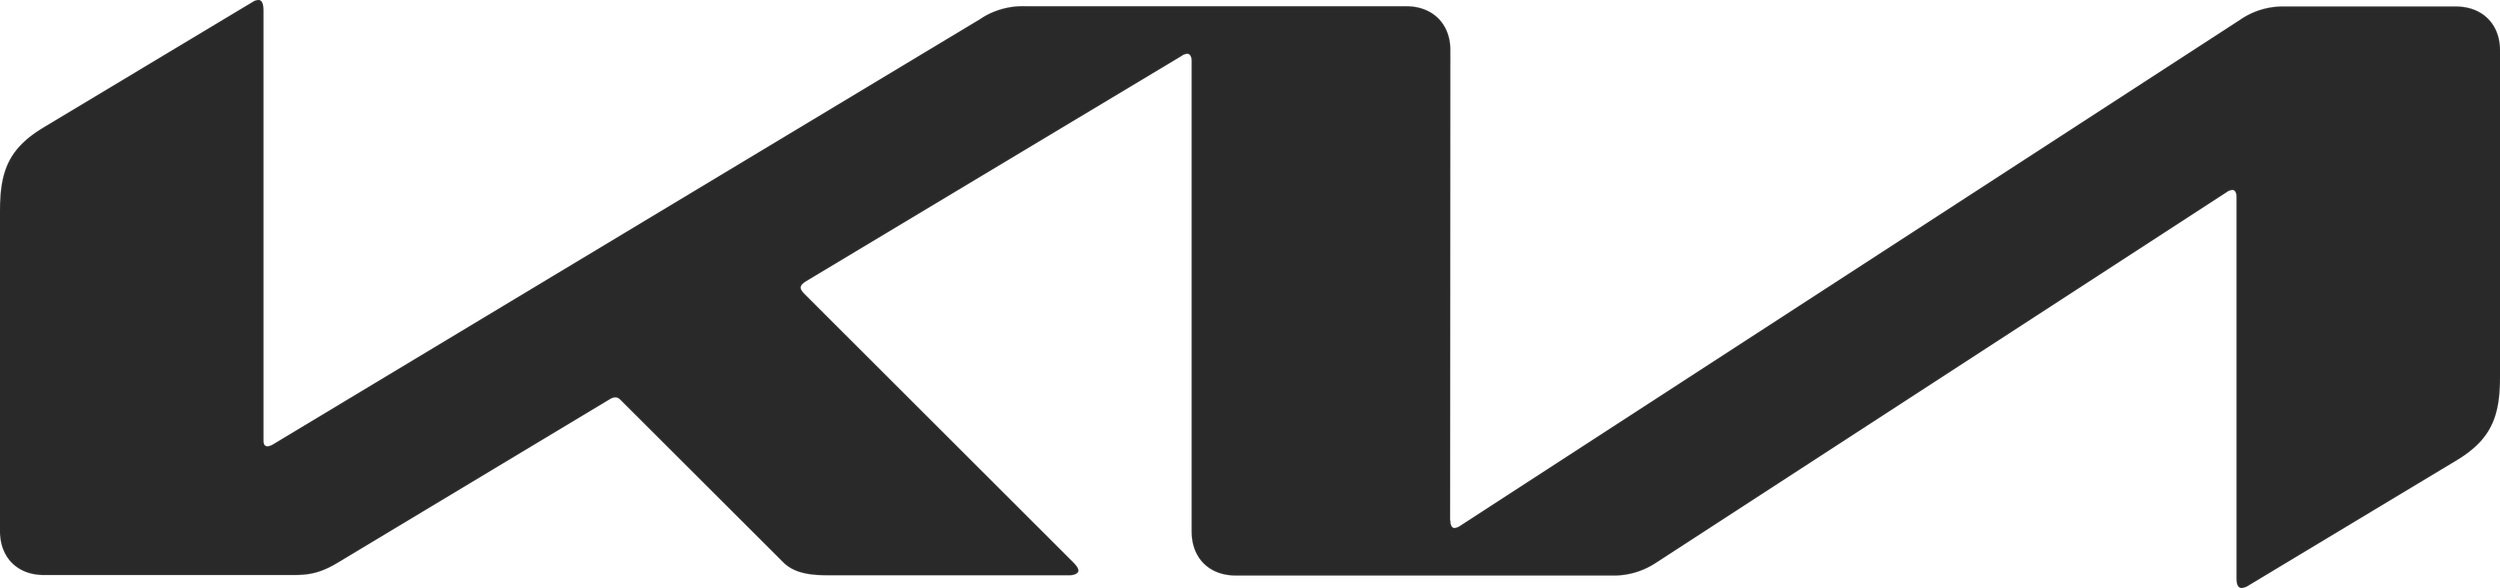 Kia_Logo_2021.jpg